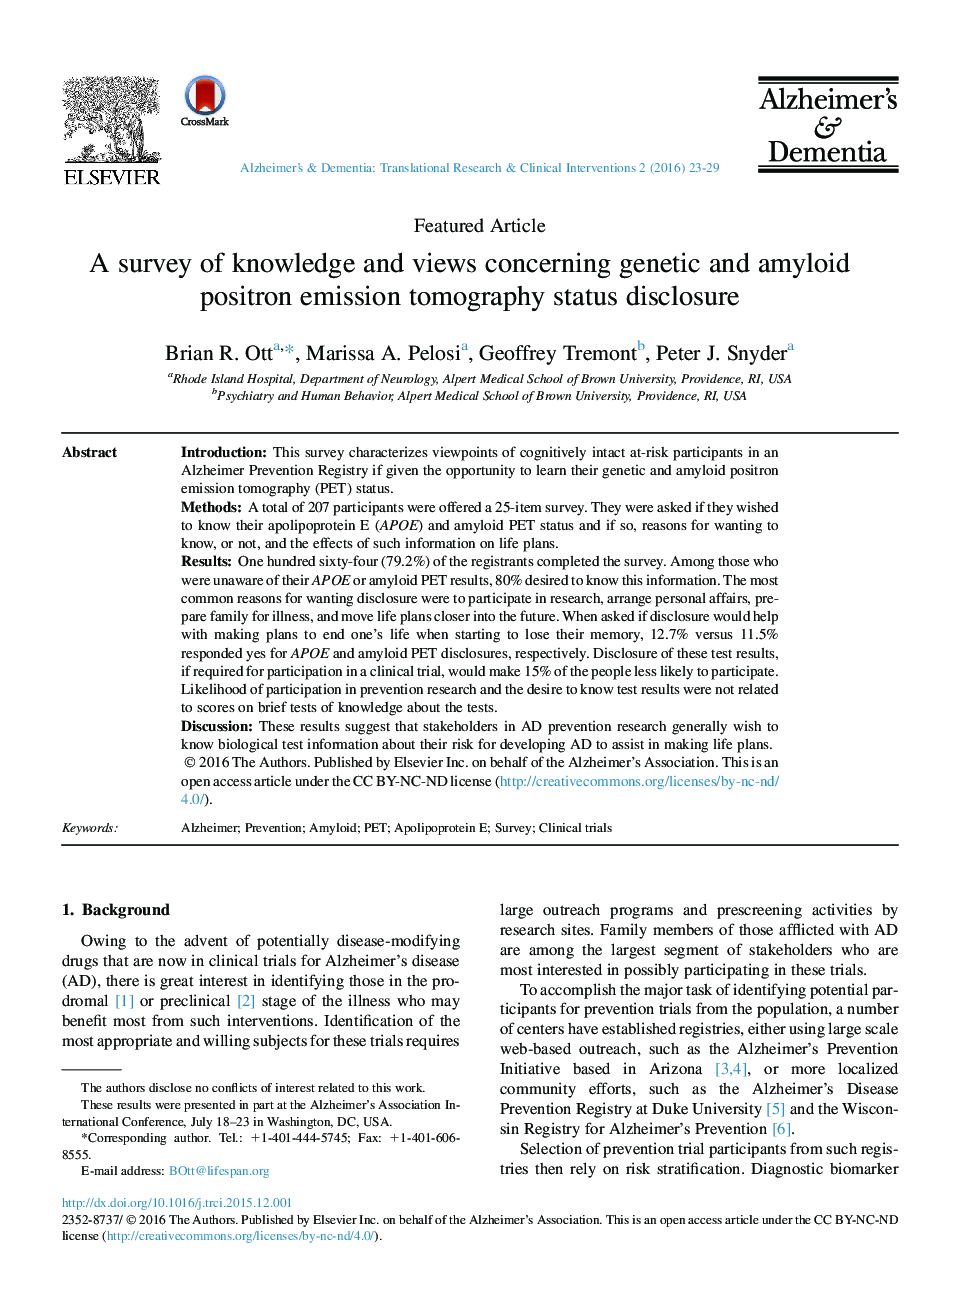 بررسی دانش و دیدگاه های مربوط به افشای وضعیت توموگرافی گسیل پوزیترون آمیلوئید و ژنتیک 